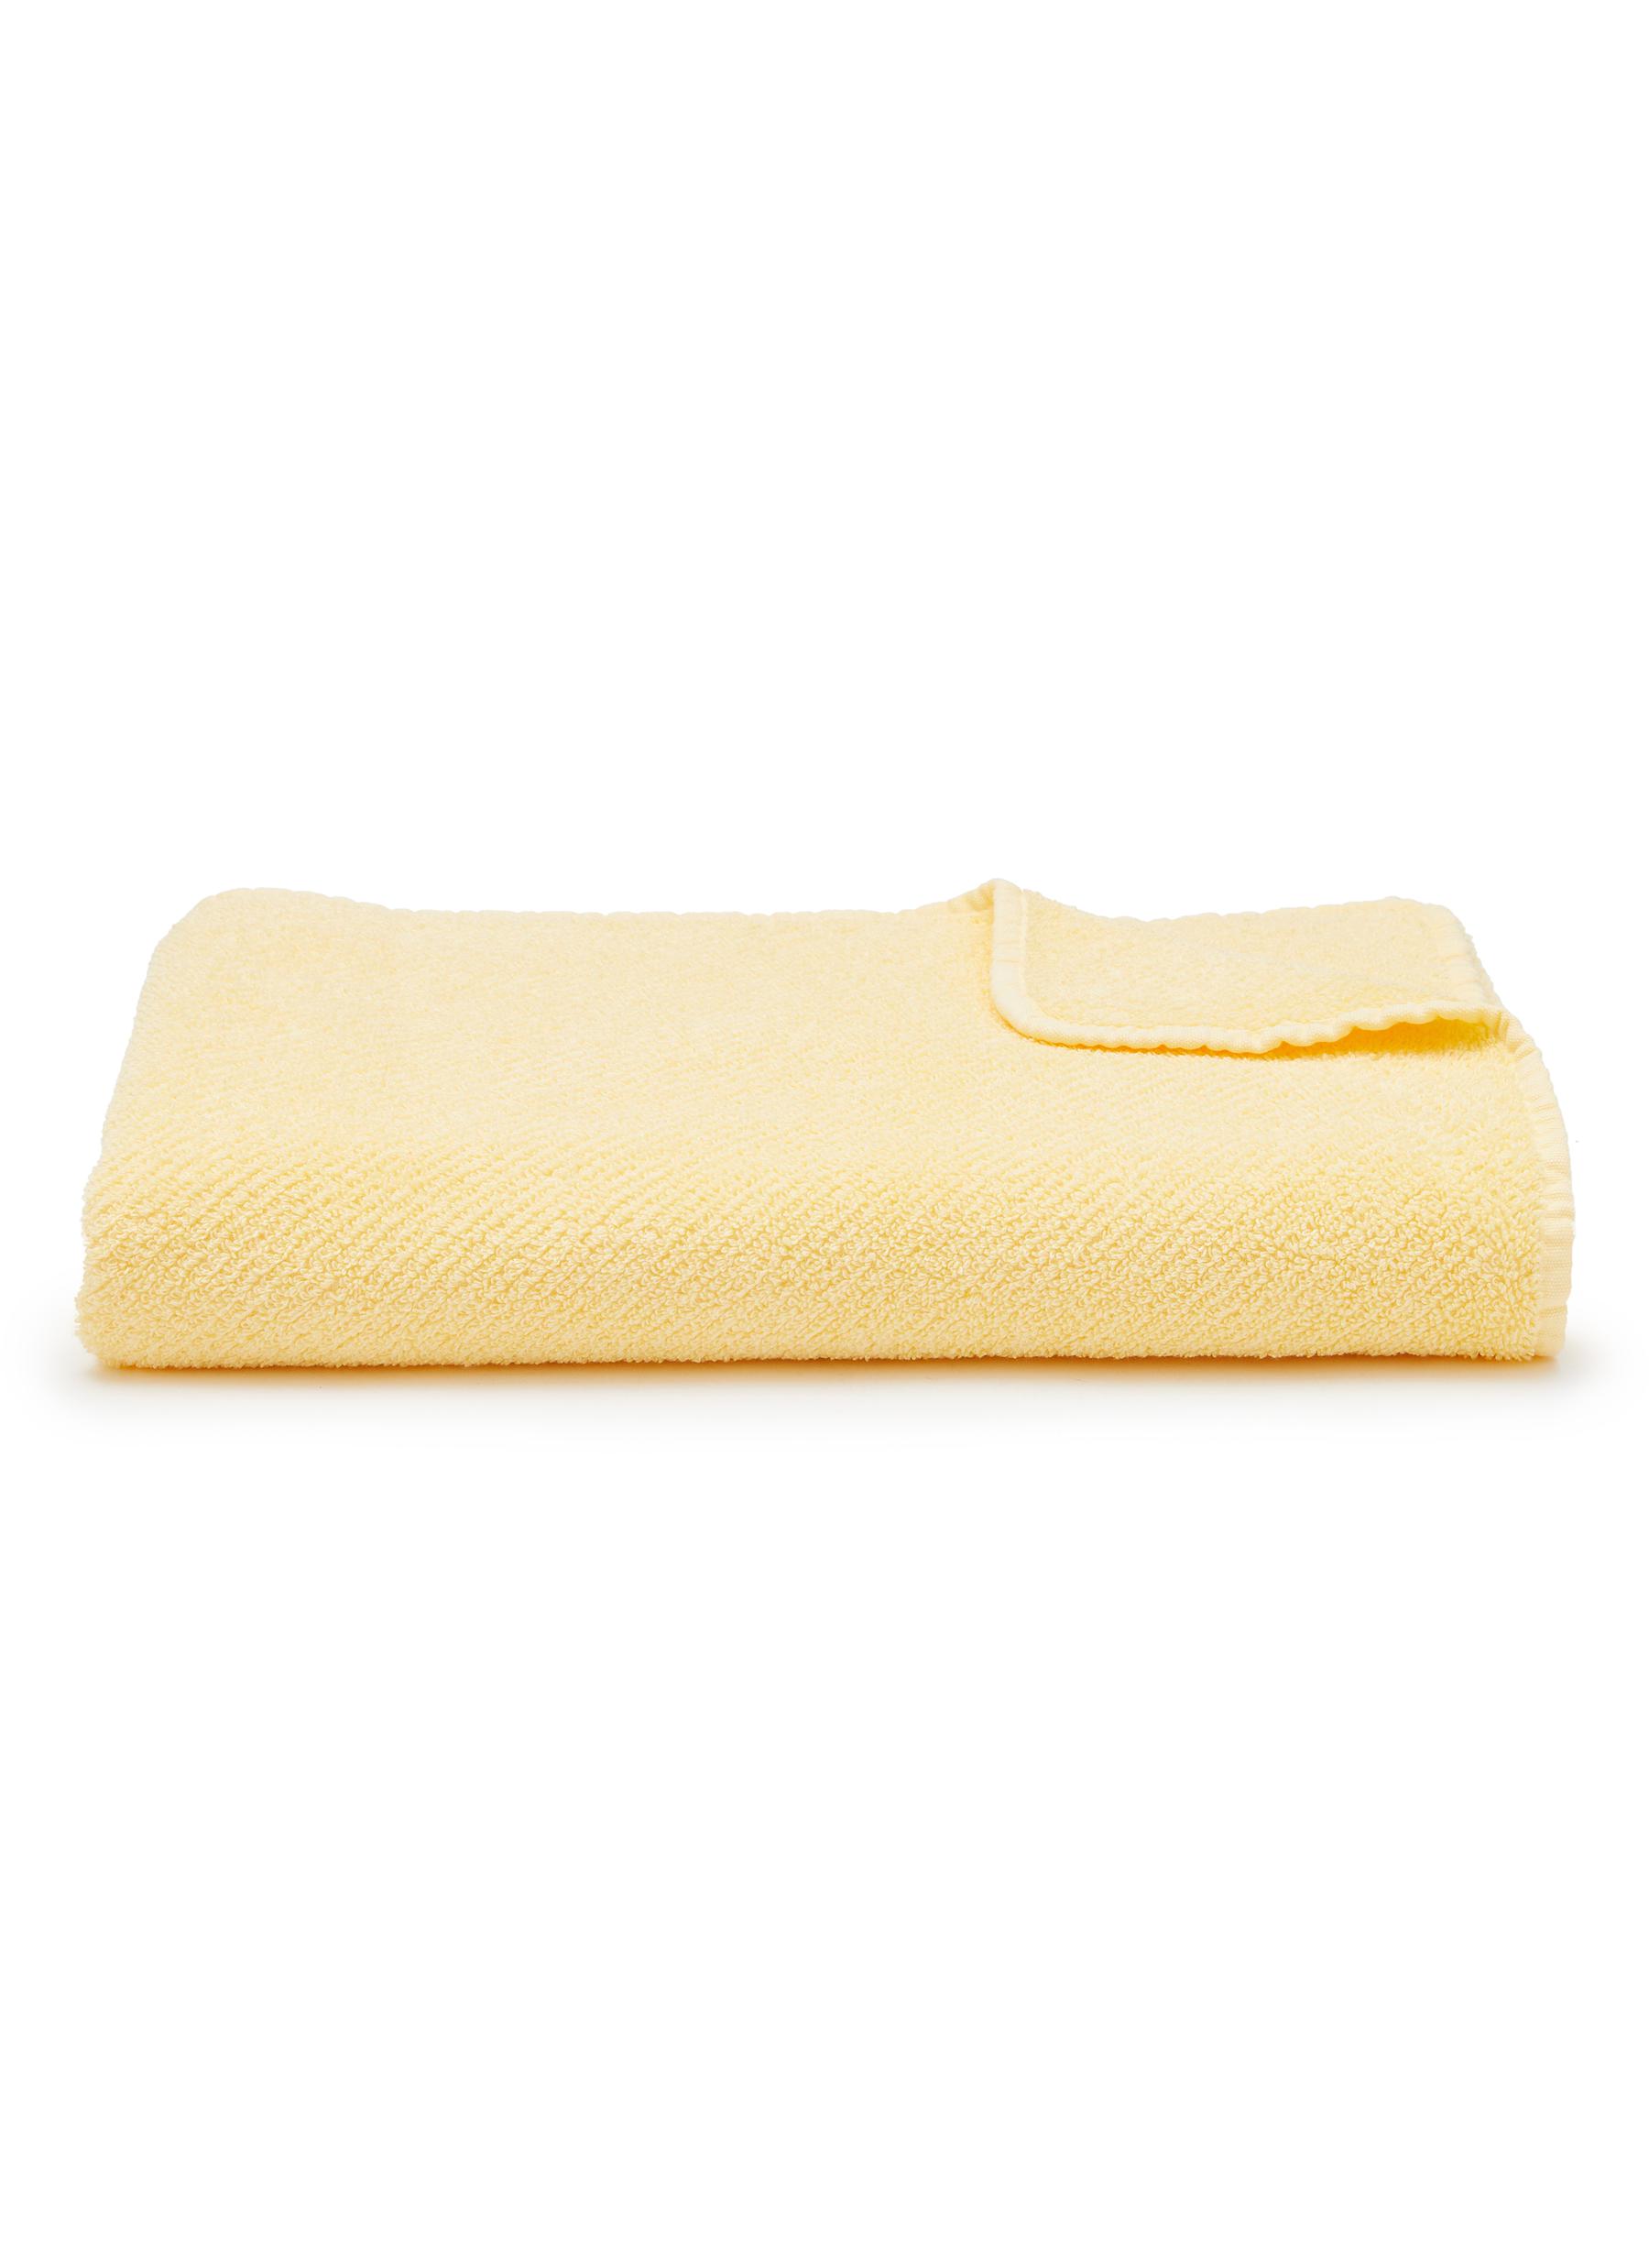 ABYSS, Super Twill Bath Towel — Popcorn, POPCORN